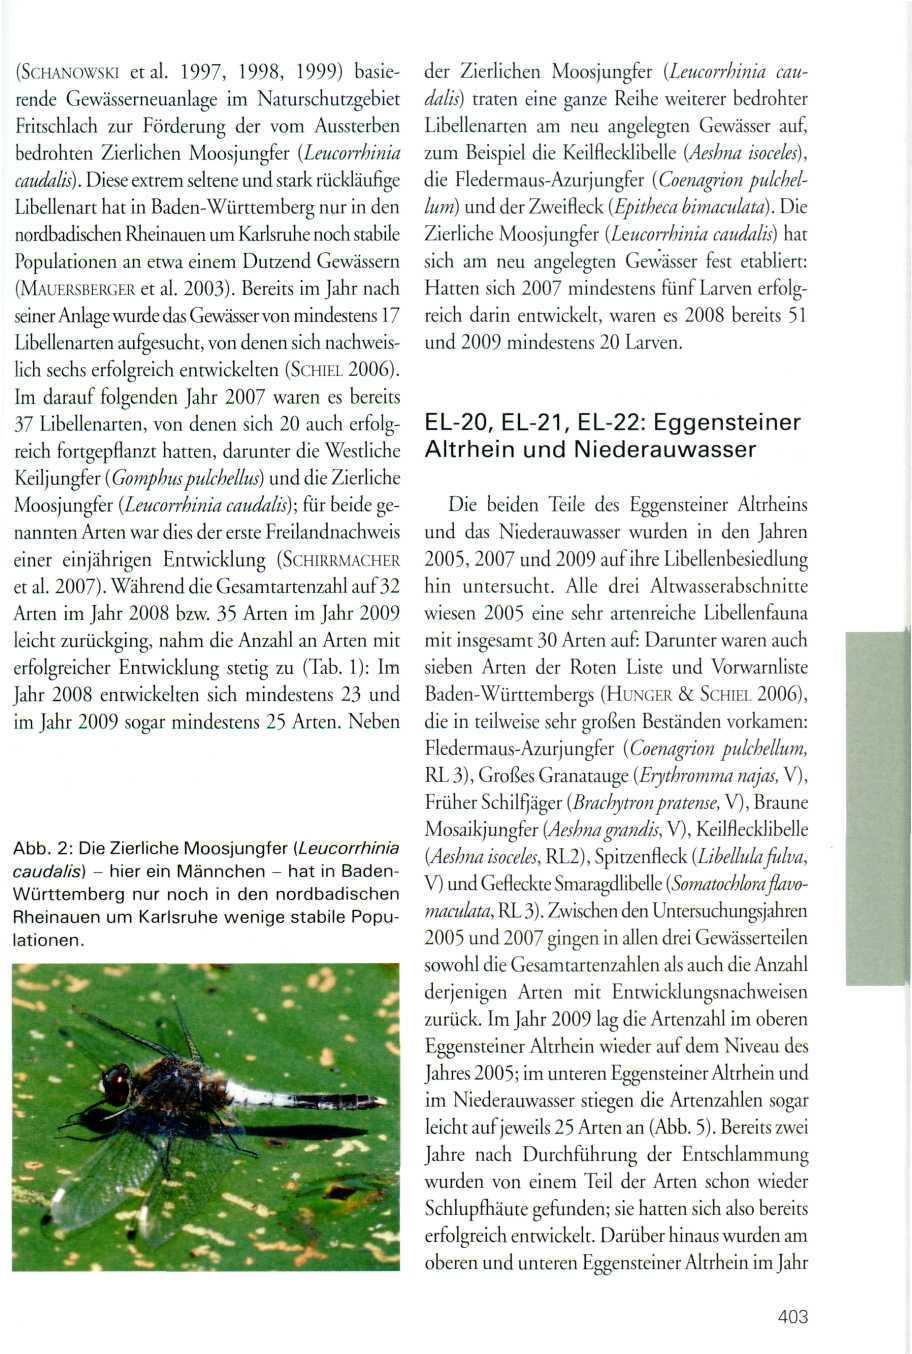 (SCHANOWSKI etal. 1997, 1998, 1999) basierende Gewässerneuanlage im Naturschutzgebiet Fritschlach zur Förderung der vom Aussterben bedrohten Zierlichen Moosjungfer (Leucorrhinia caudalis).